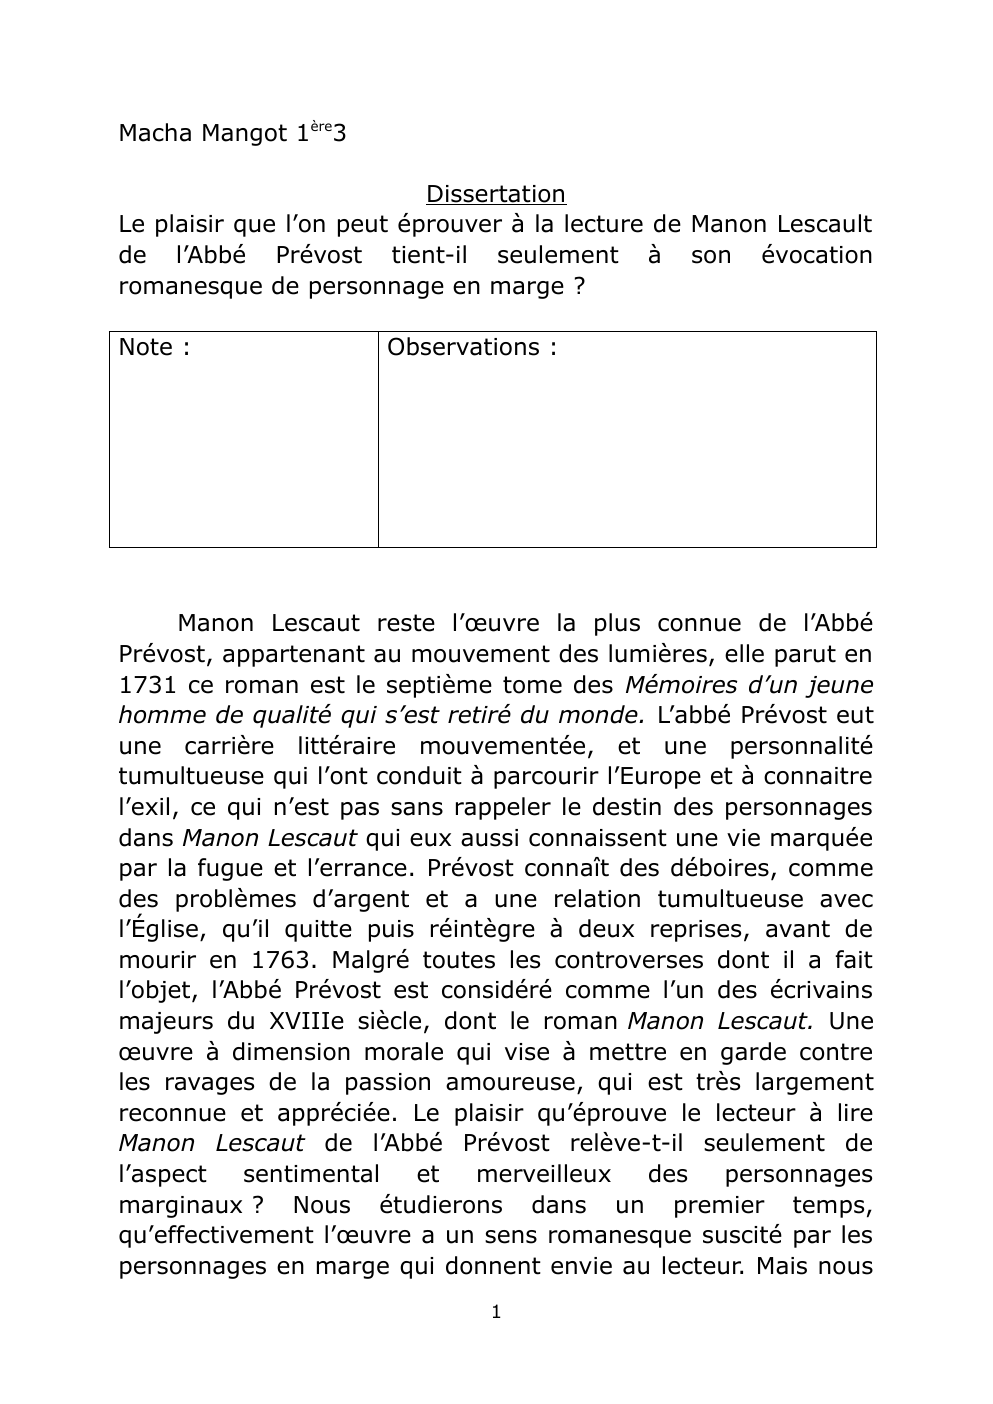 Prévisualisation du document Le plaisir que l’on peut éprouver à la lecture de Manon Lescault de l’Abbé Prévost tient-il seulement à son évocation romanesque de personnage en marge ?